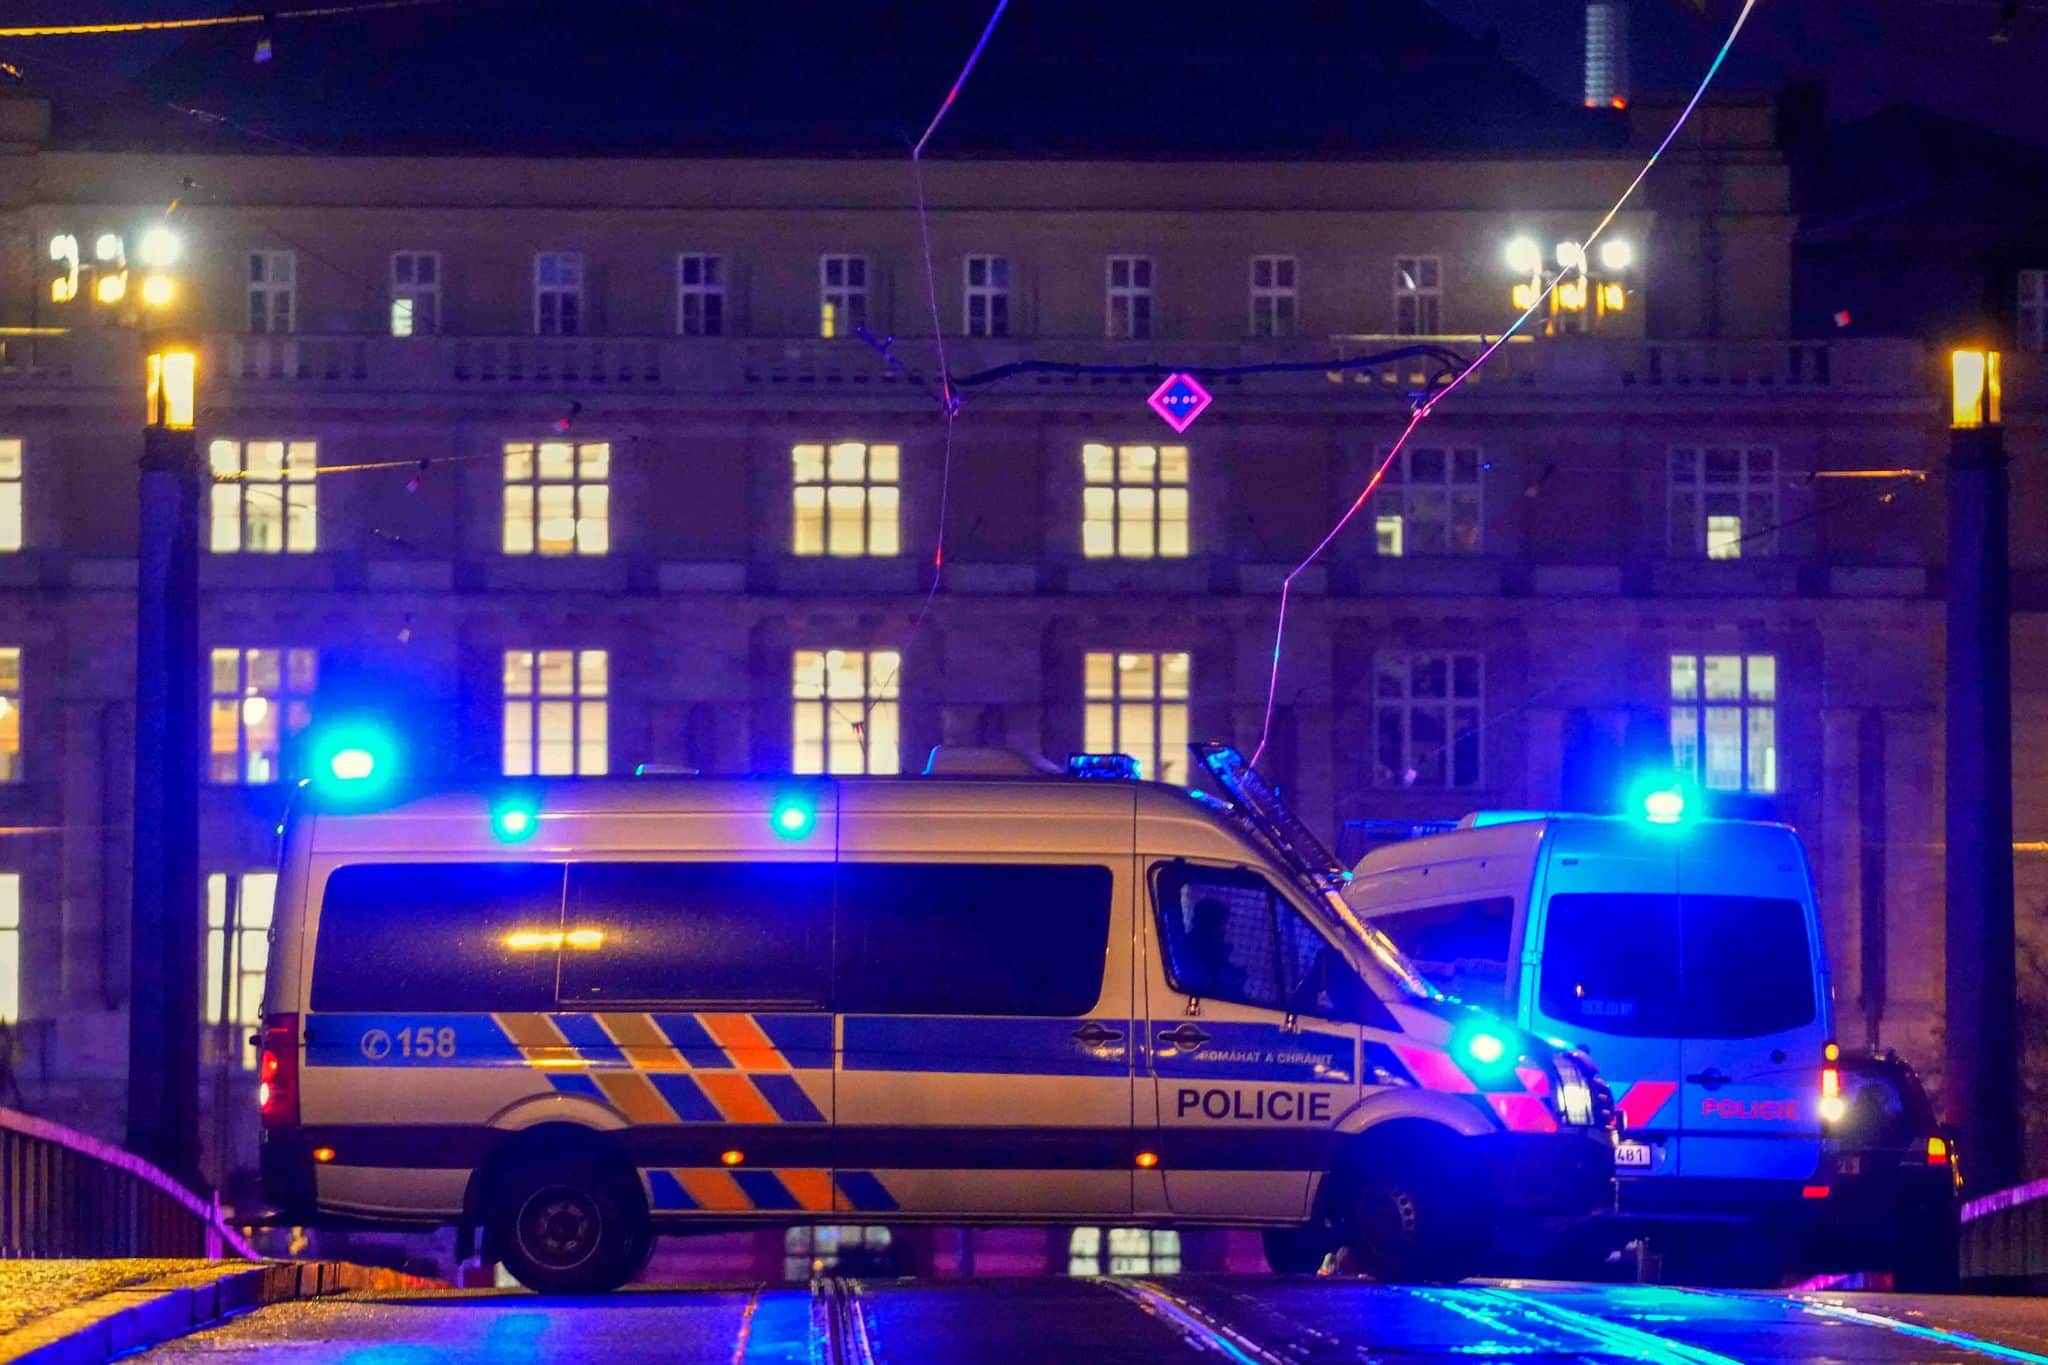 Bluttat an Prager Universität: Polizei sucht nach Motiv